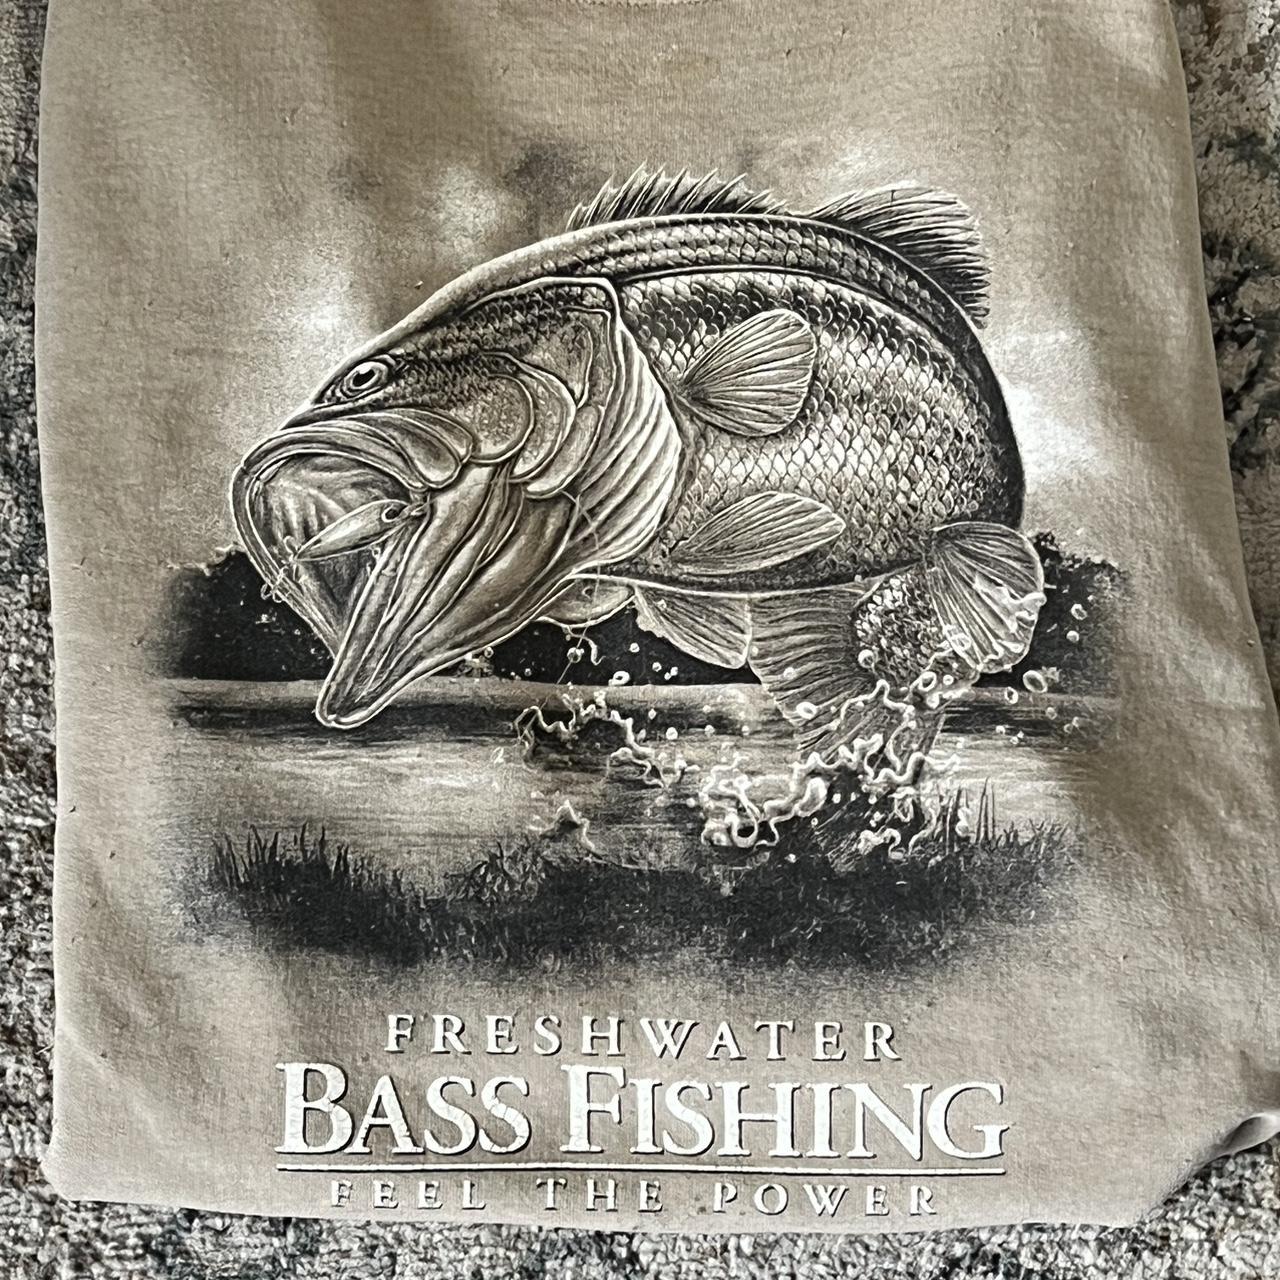 Vintage Fishing Get Reel Go Fish T Shirt 00s Size: - Depop